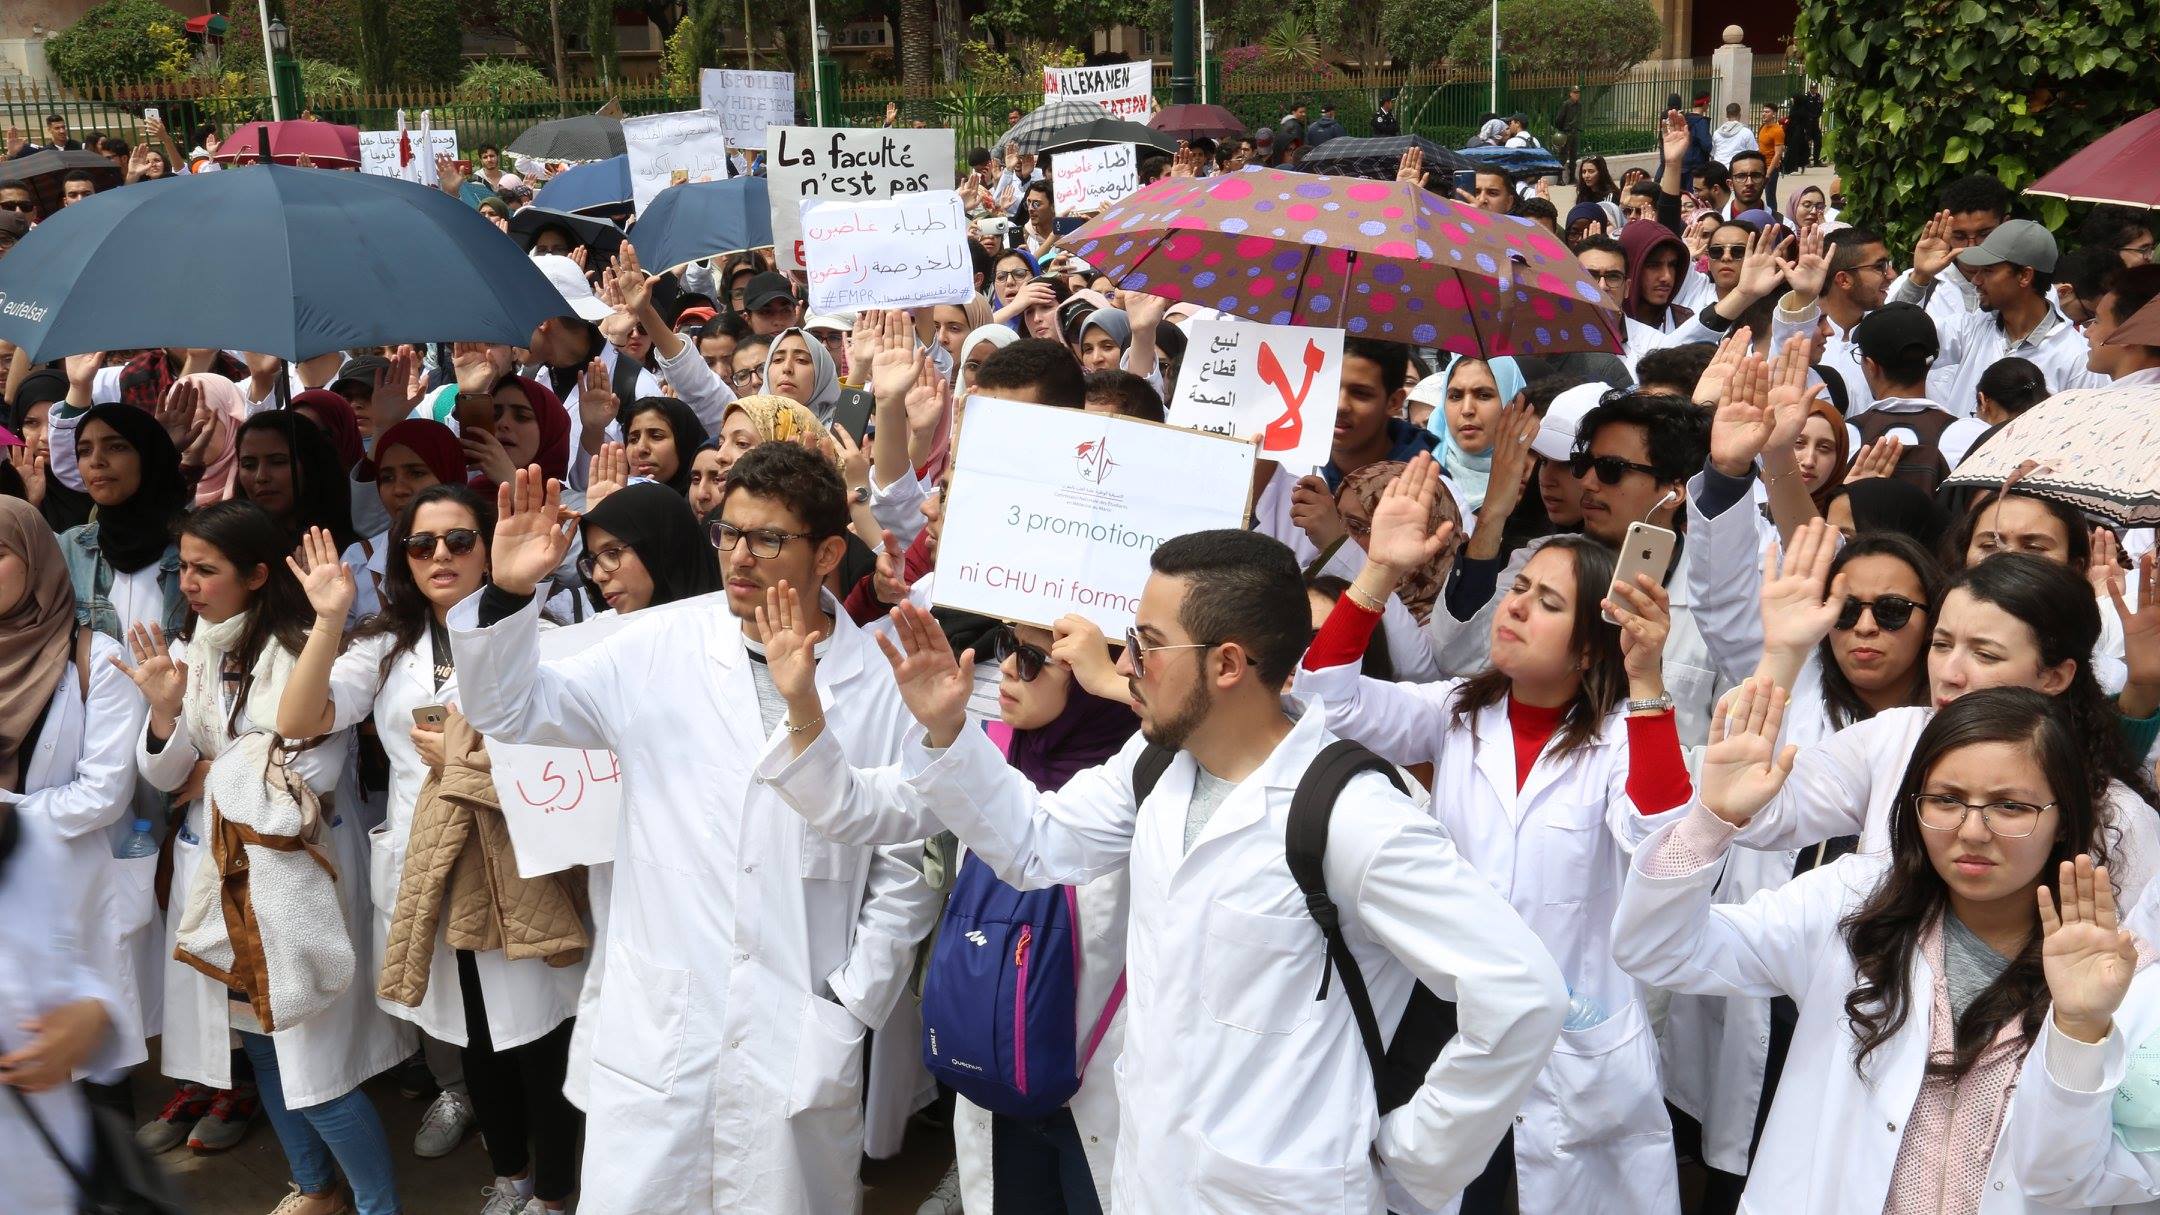 صورة طلبة الطب يستعدون لخوض احتجاج جديد وهذا هو السبب